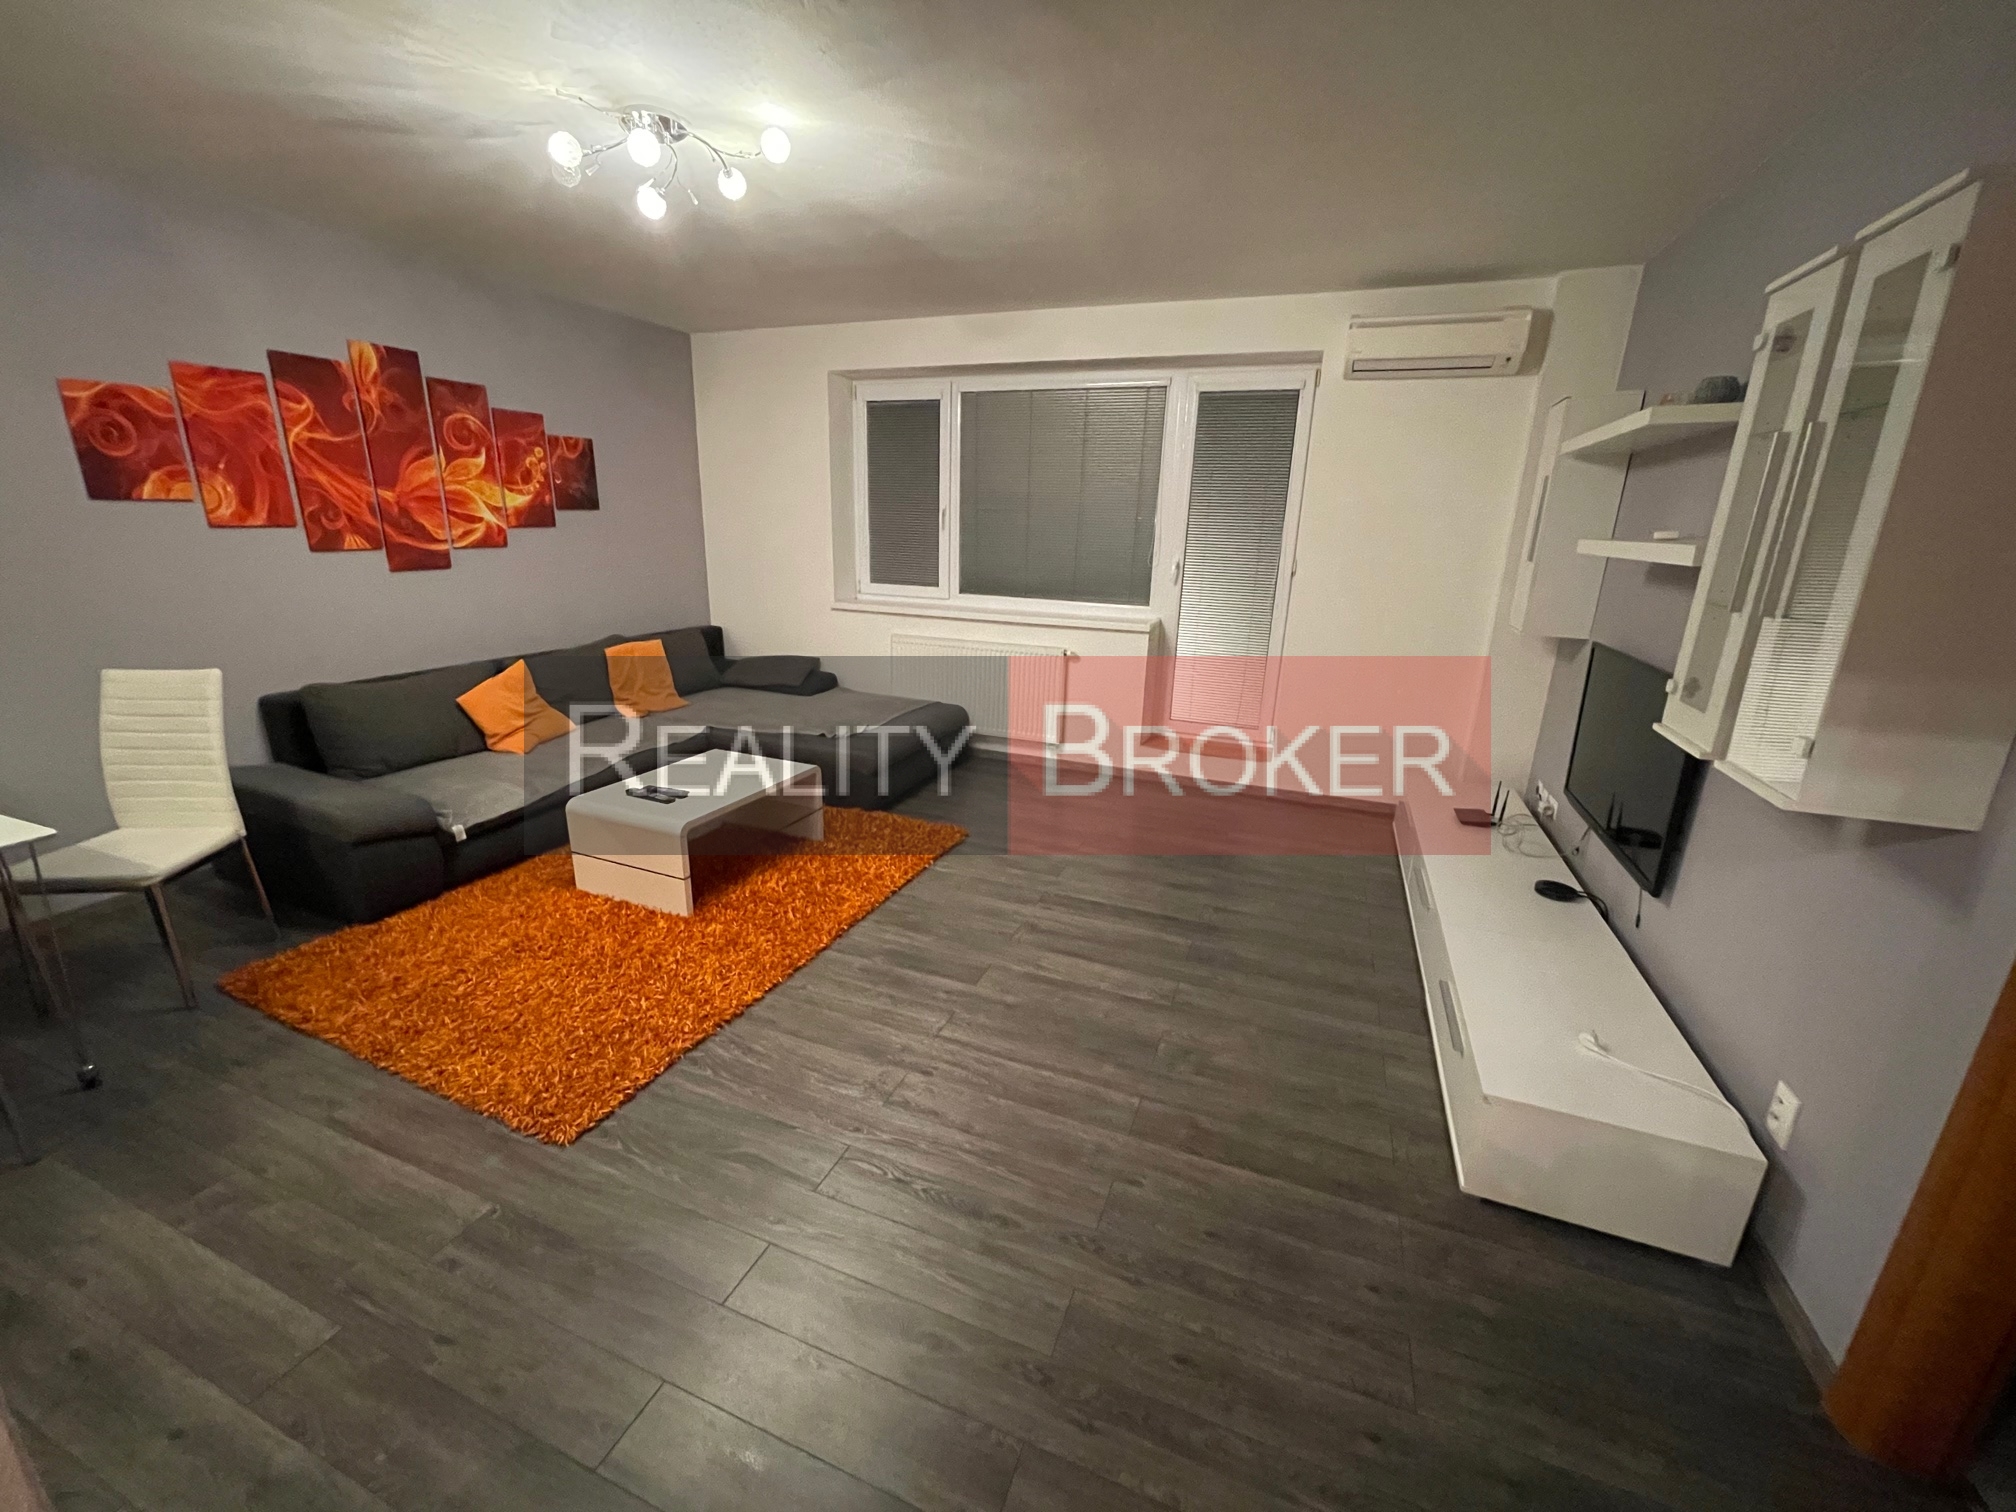 REALITY BROKER ponúka na prenájom zariadený 2-izbový byt s terasou v centre Senca na pešej zóne